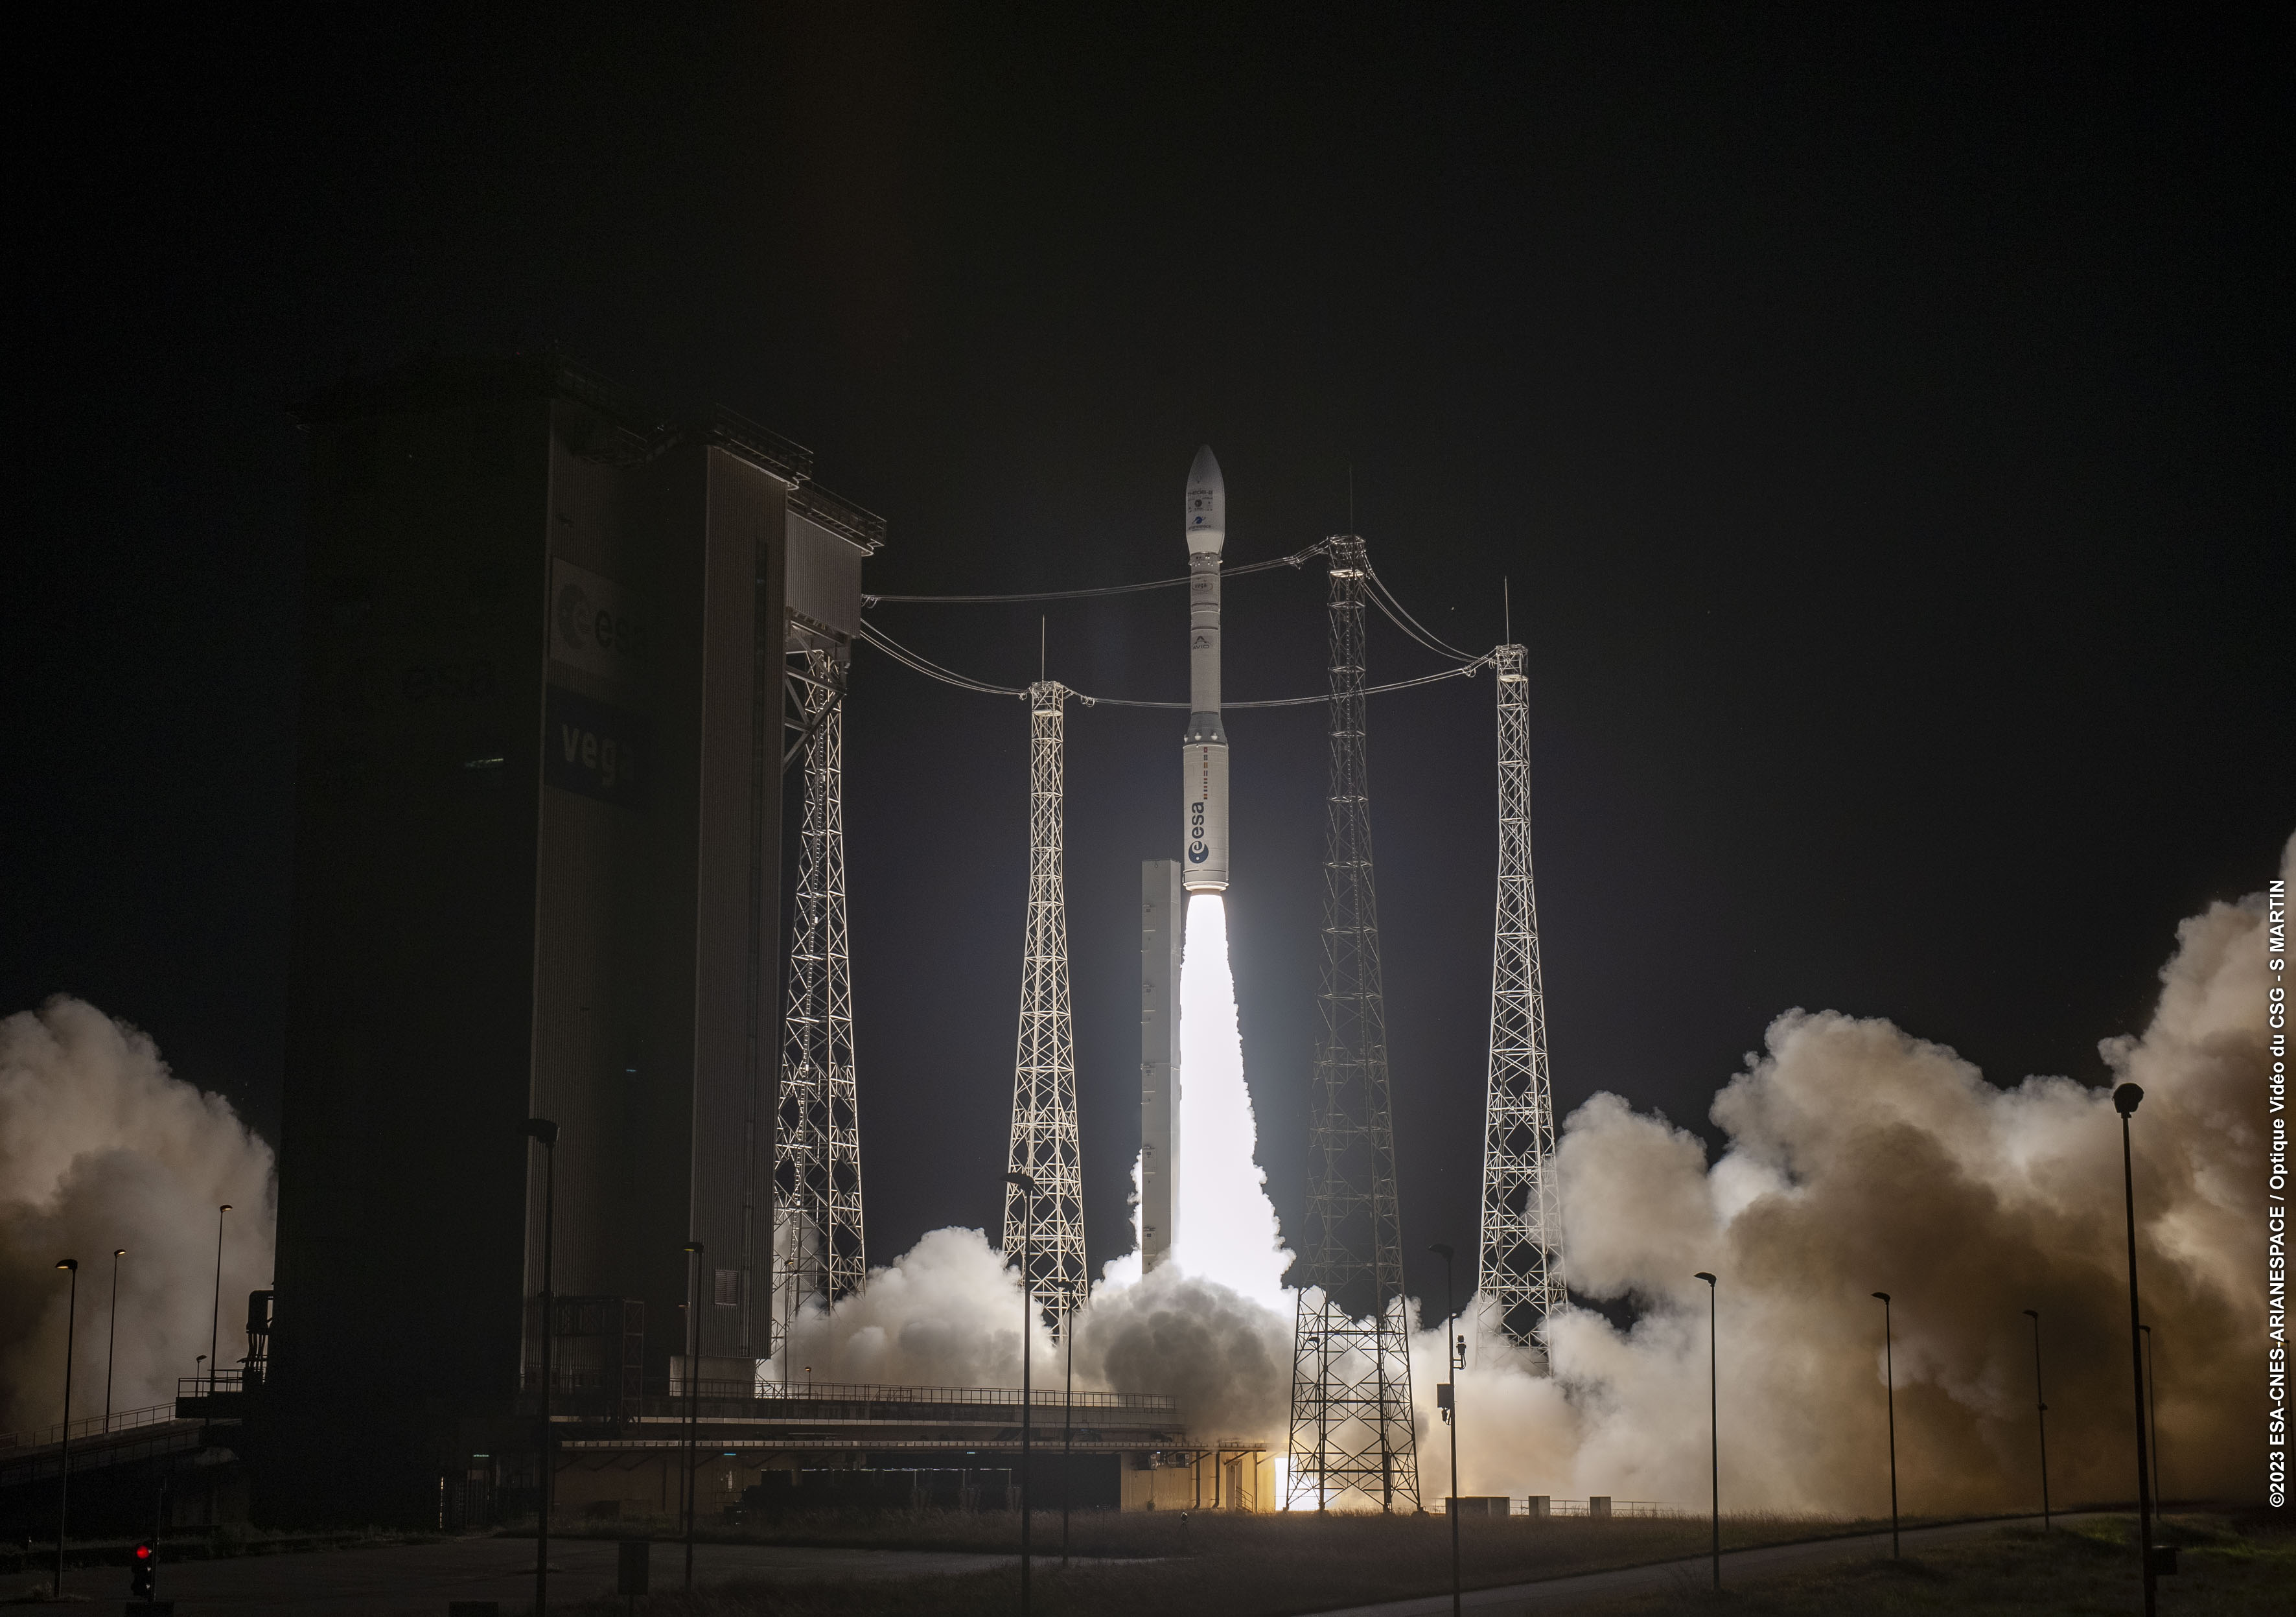     Mission réussie pour Vega, troisième et dernière fusée européenne lancée en 2023

